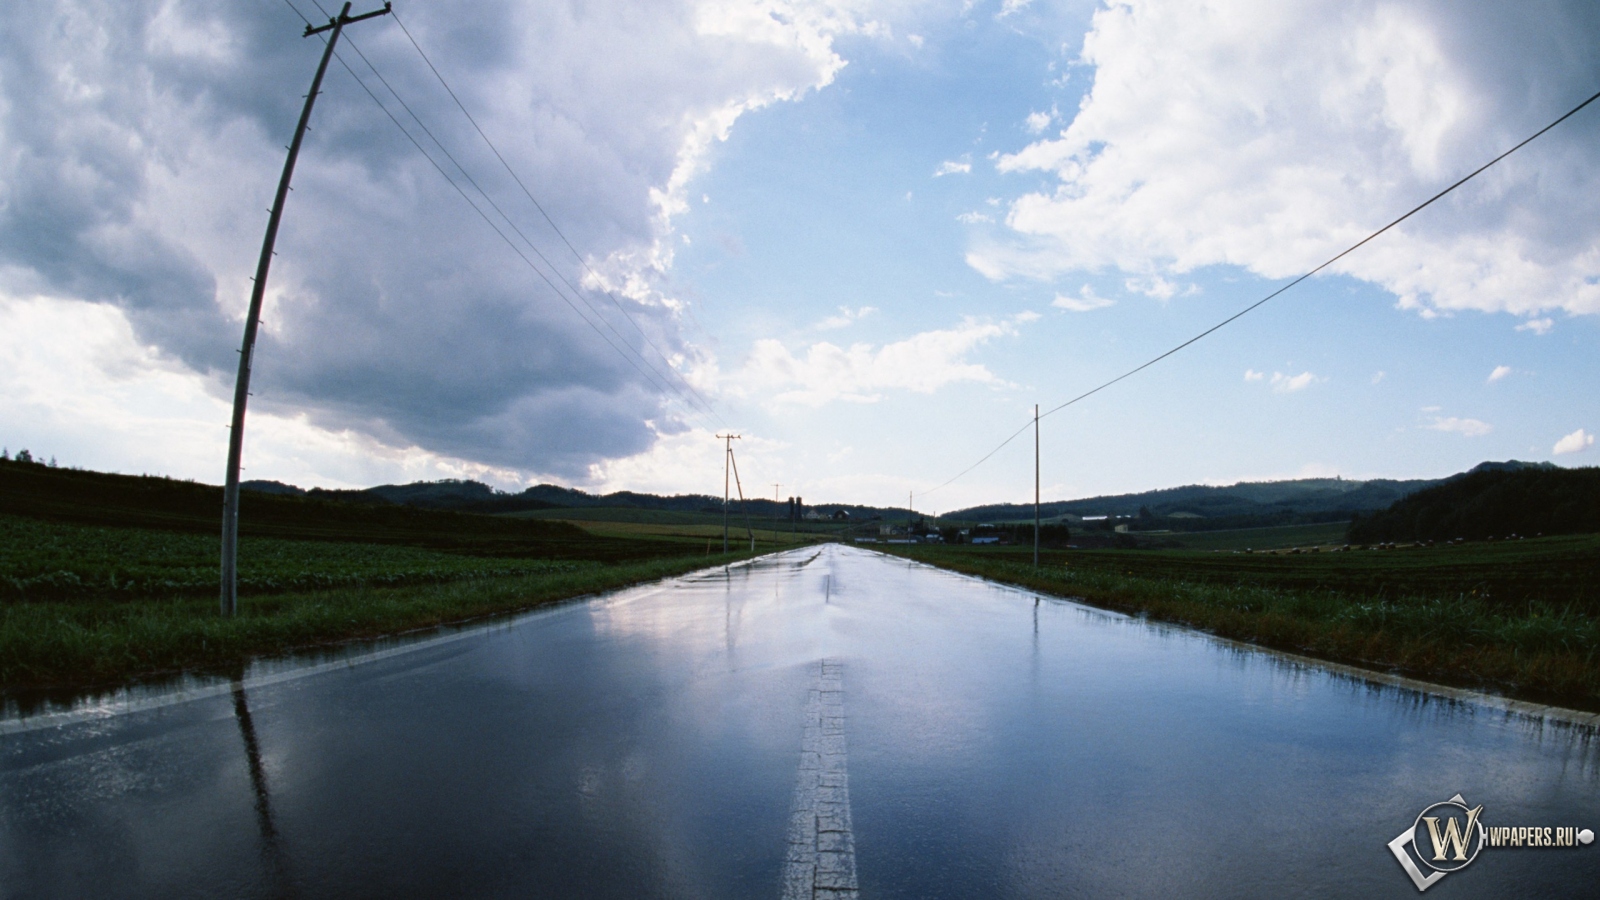 Дорога после дождя 1600x900